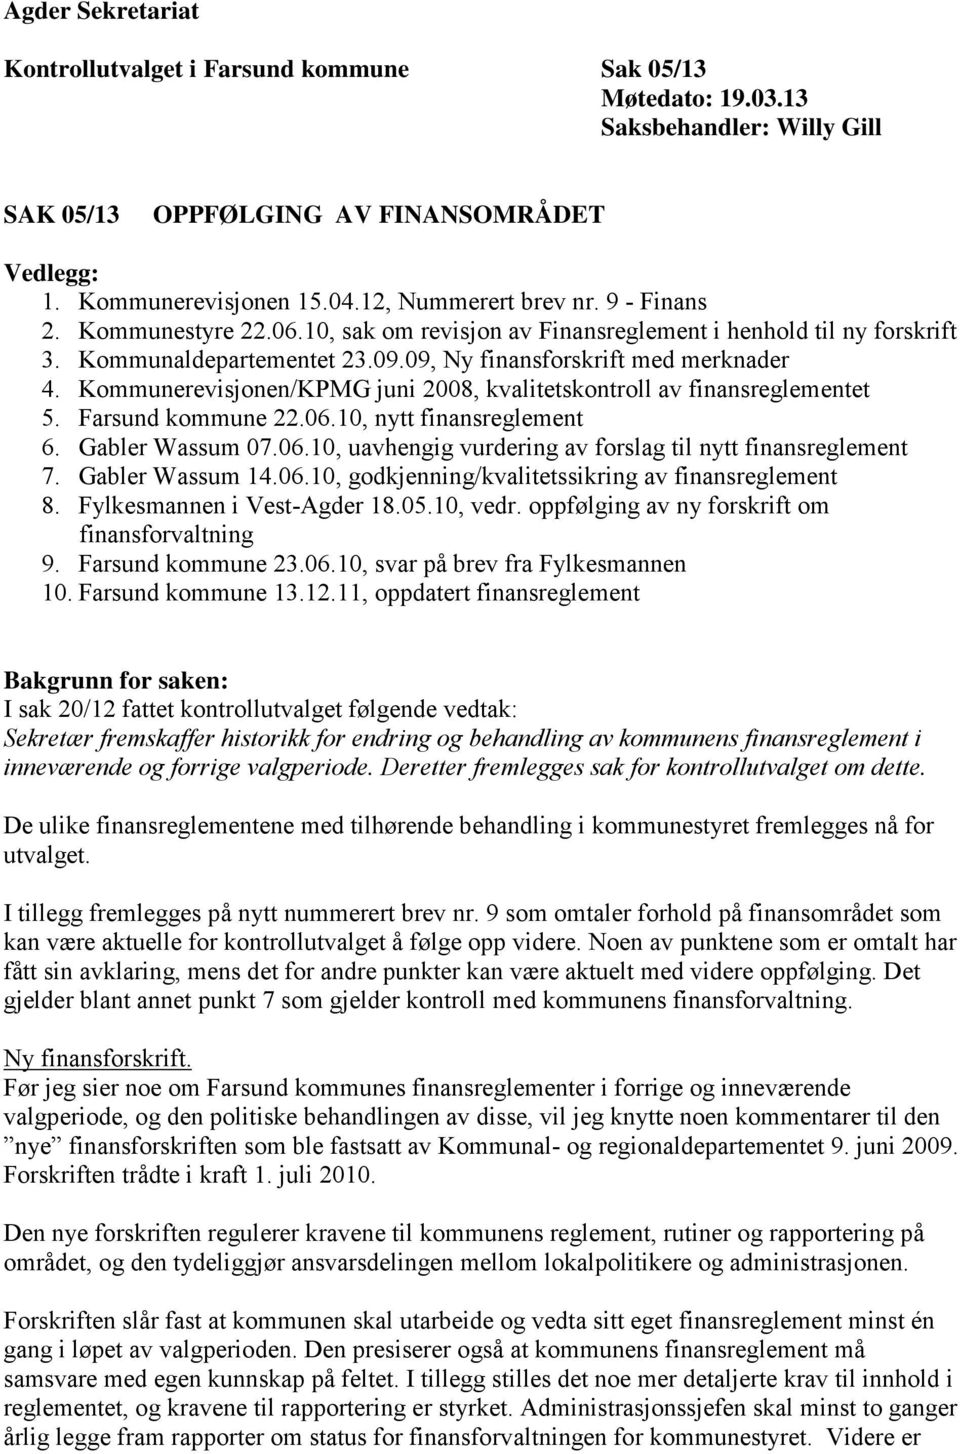 Kommunerevisjonen/KPMG juni 2008, kvalitetskontroll av finansreglementet 5. Farsund kommune 22.06.10, nytt finansreglement 6. Gabler Wassum 07.06.10, uavhengig vurdering av forslag til nytt finansreglement 7.